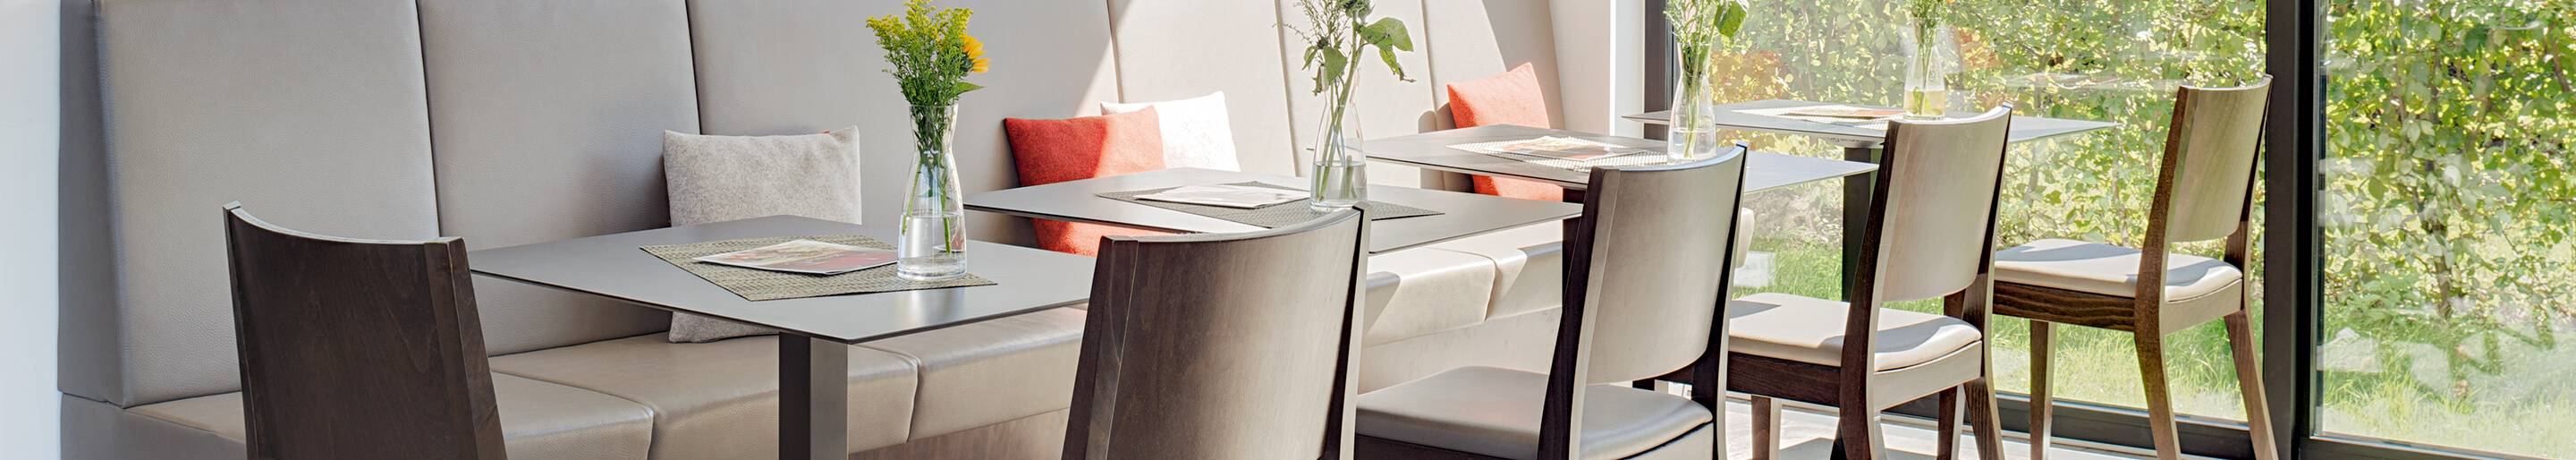 Indoor Stühle für Ihre Gastronomie und Hotellerie